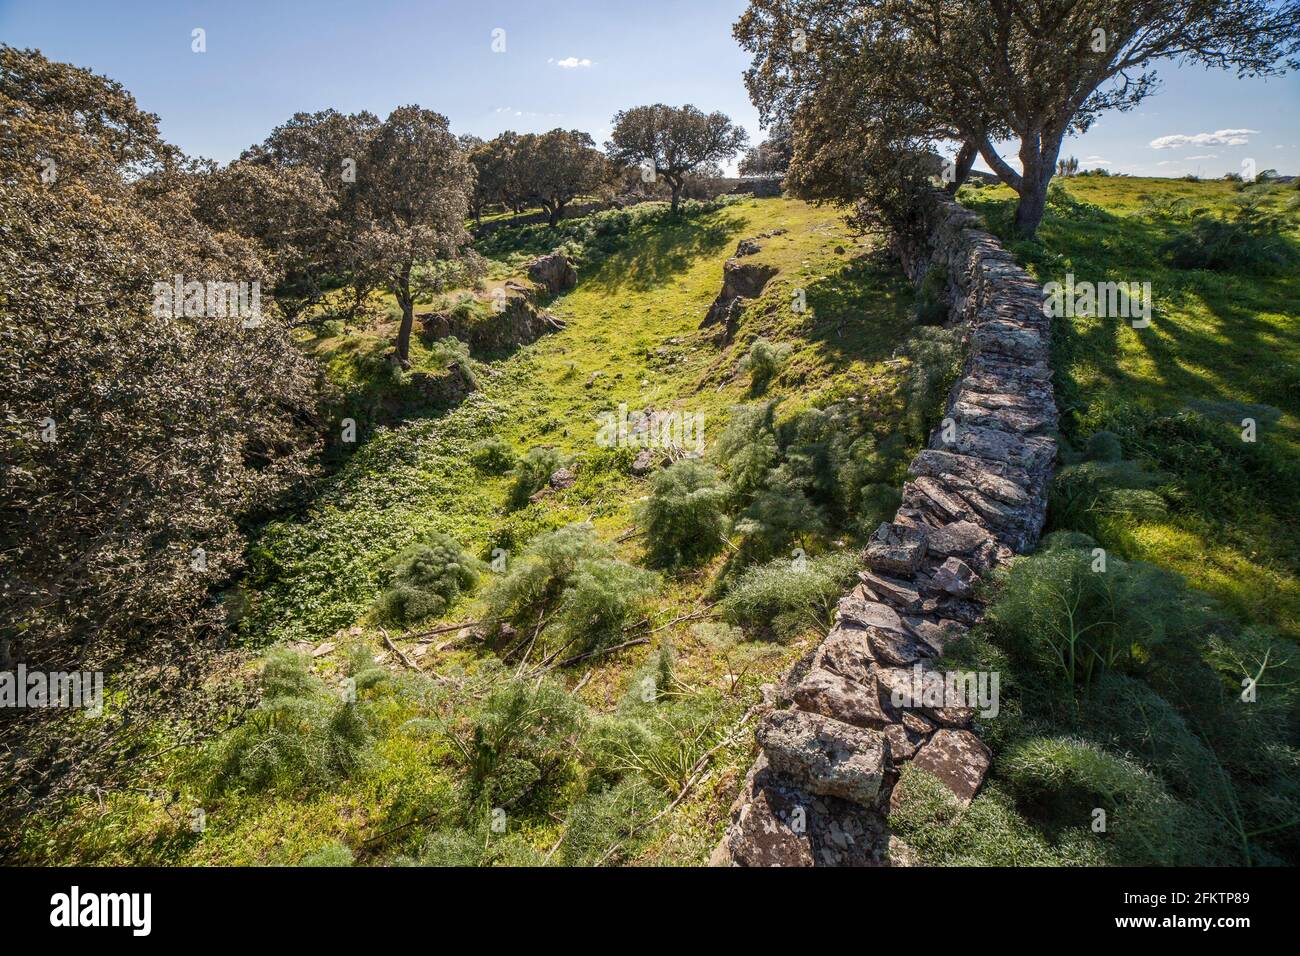 Archäologische Stätte von Tamusia, Botija, Caceres, Extremadura. Graben Westhispano-keltische Bergfestung der Vettonier. Stockfoto